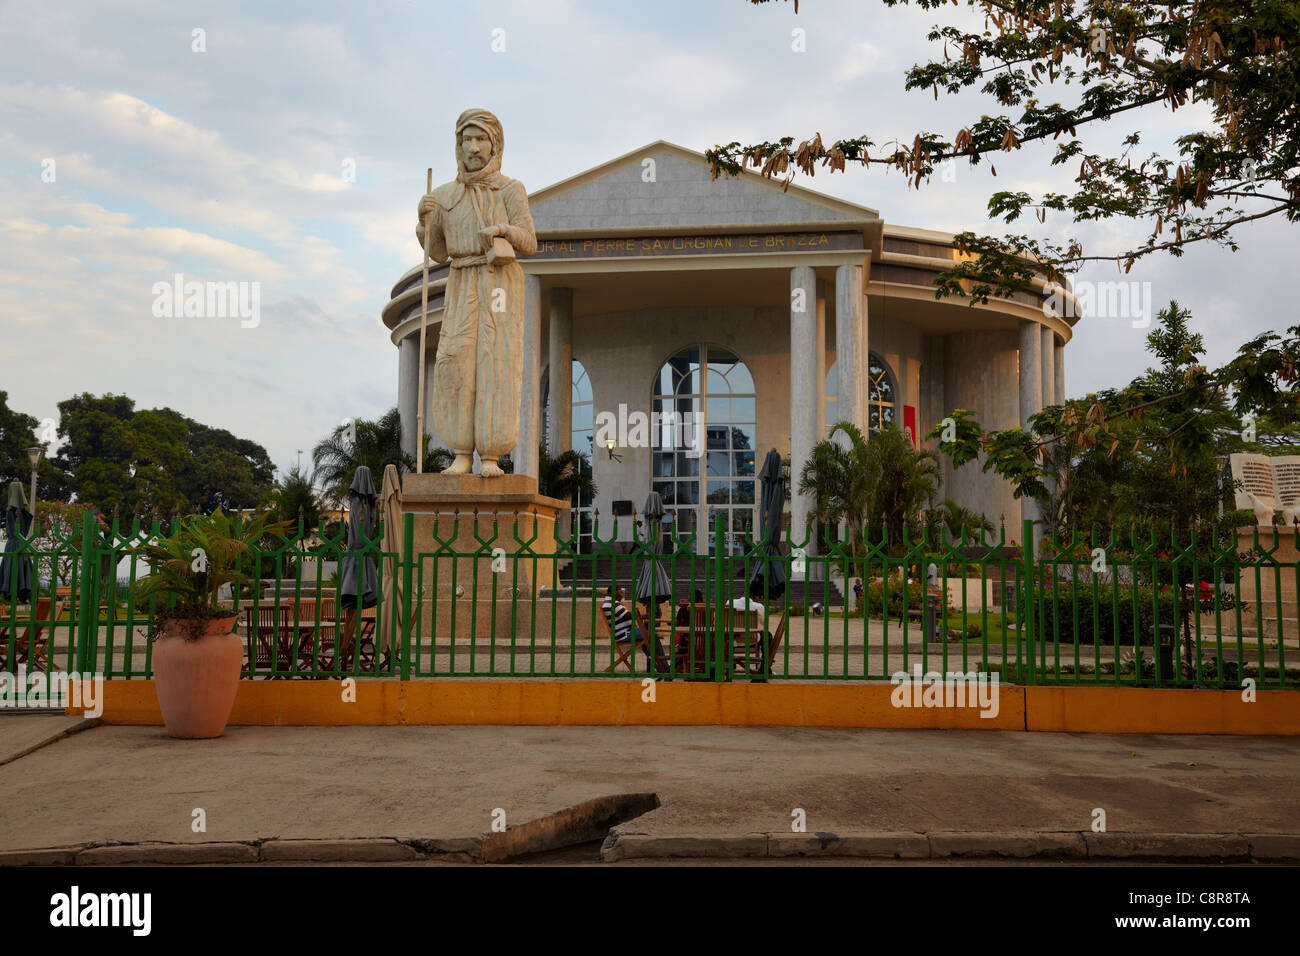 Savorgnan de Brazza Mausoleum, Brazzaville, Republic of Congo, Africa Stock Photo